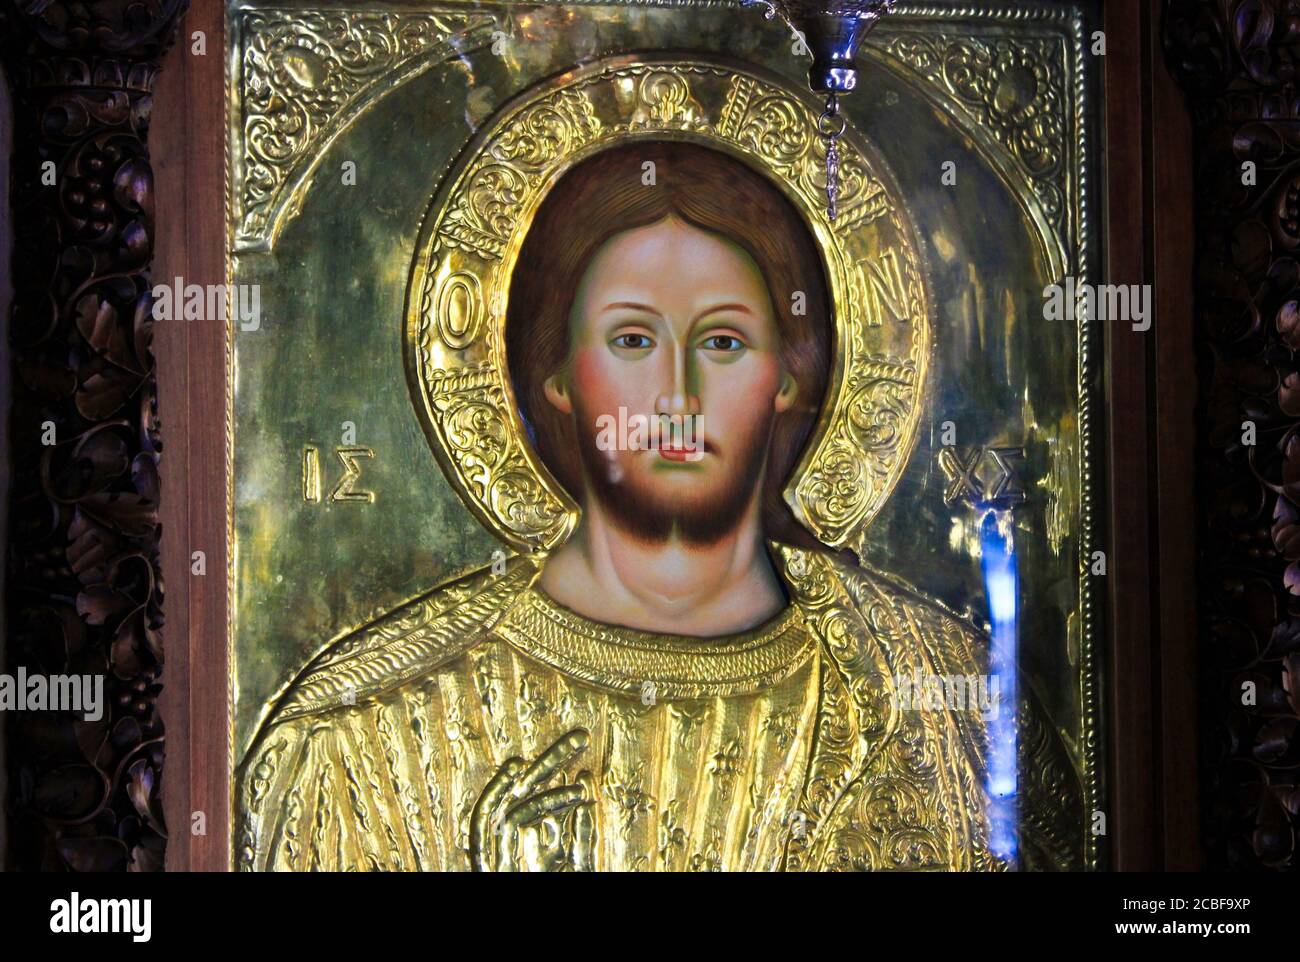 Grecia, Atene, 11 2020 agosto - icona di Gesù Cristo, artigianale e coperto d'oro, all'interno di una chiesa cristiana ortodossa. Foto Stock